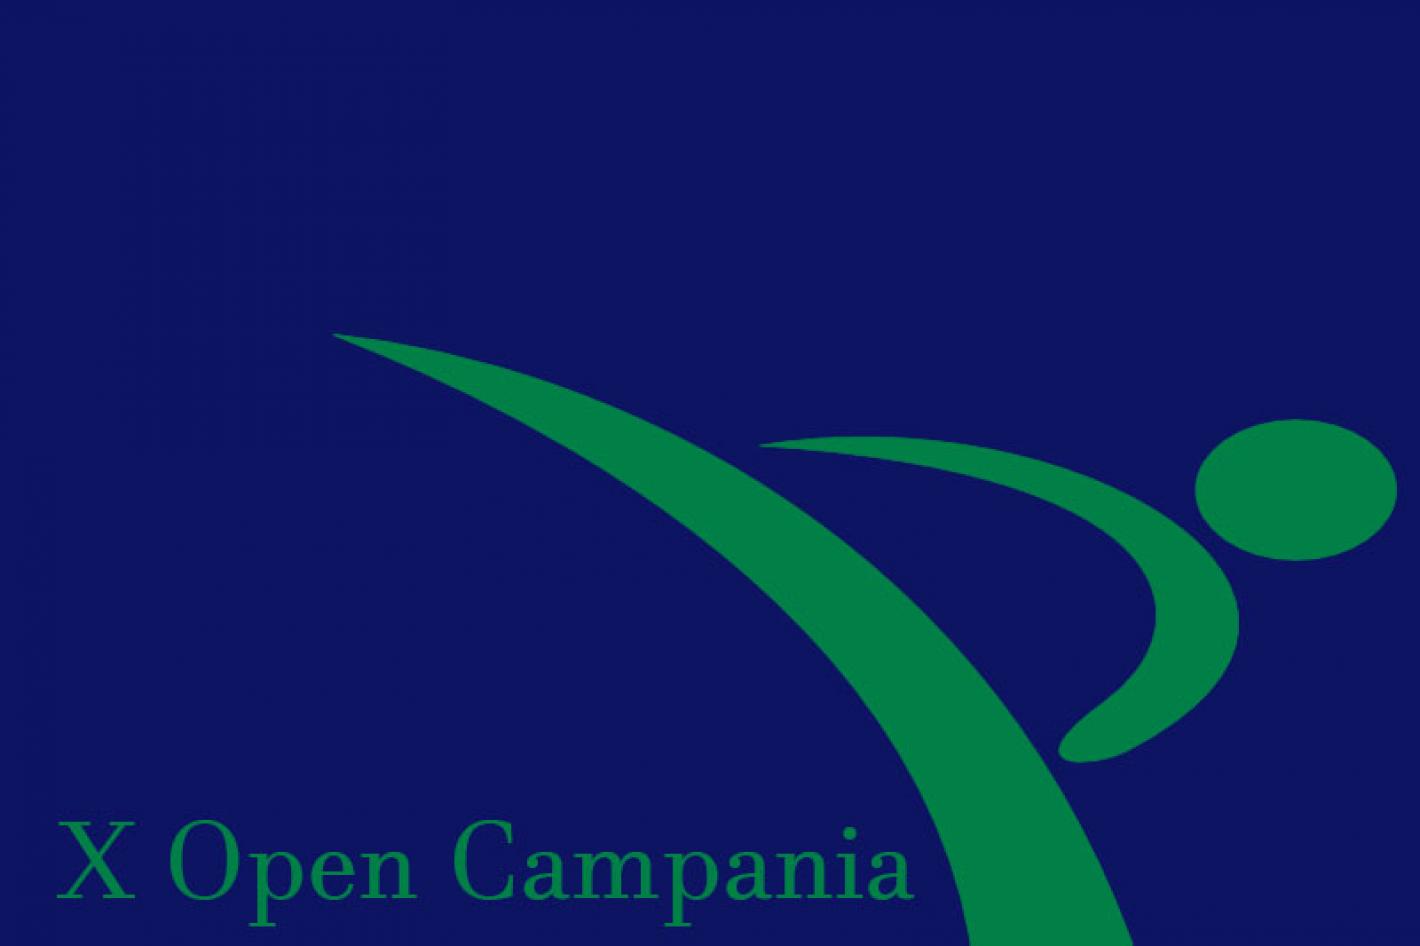 images/campania/medium/Open-Campania-Internazionale-al-via-la-X-edizione.jpg